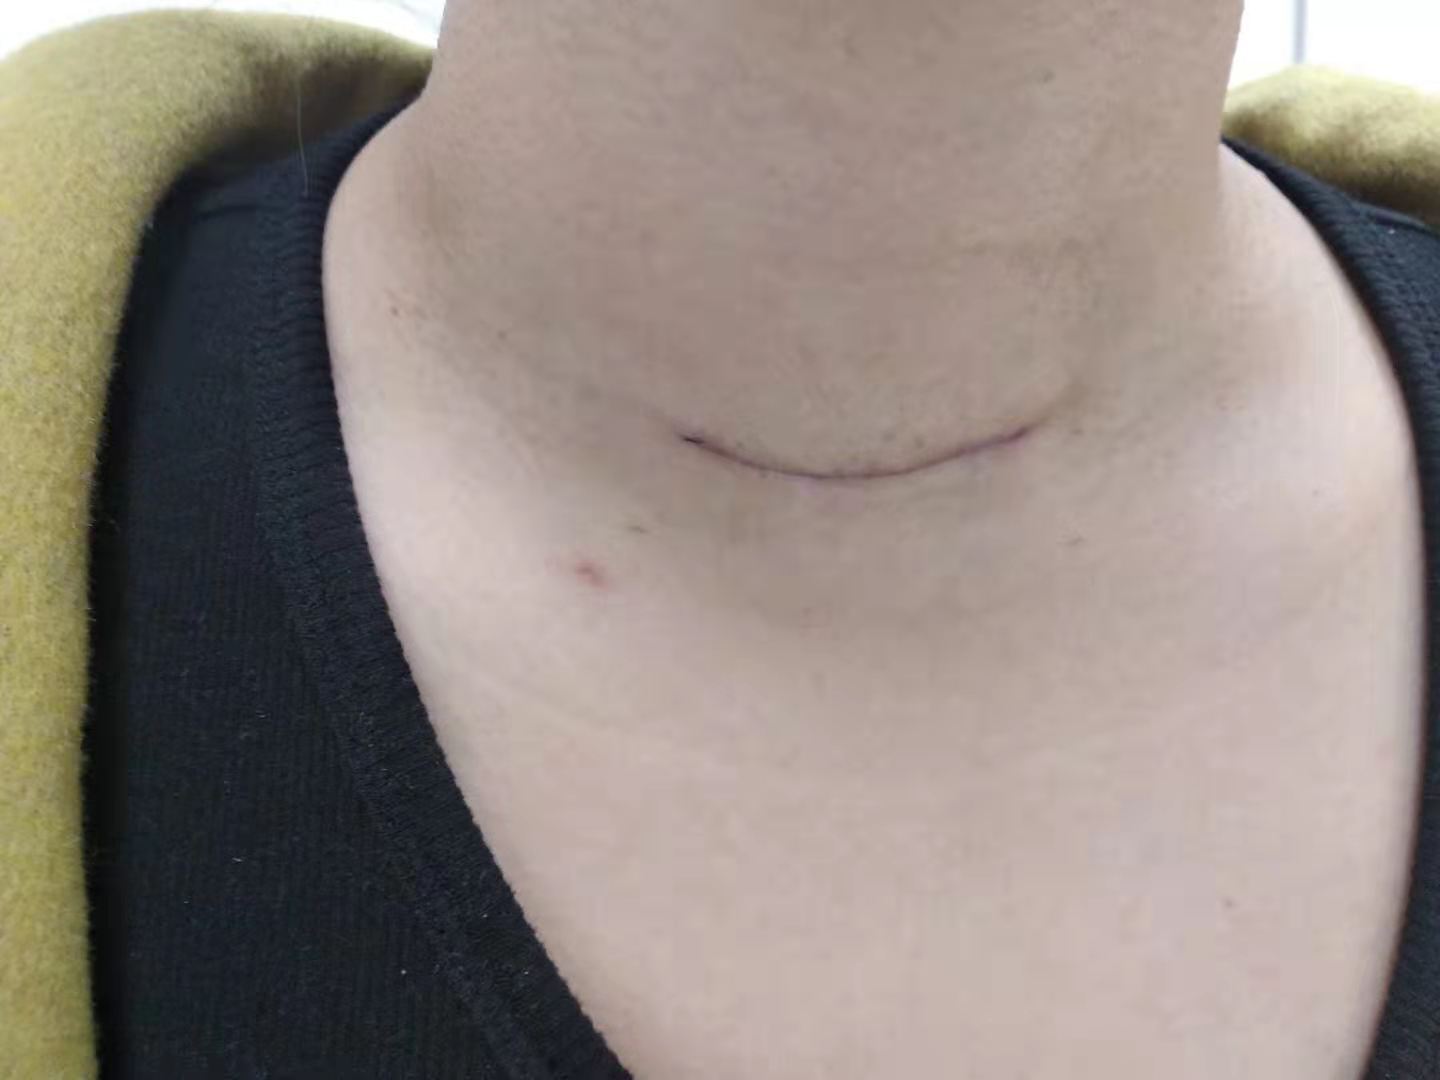 甲状腺结节手术刀口图片